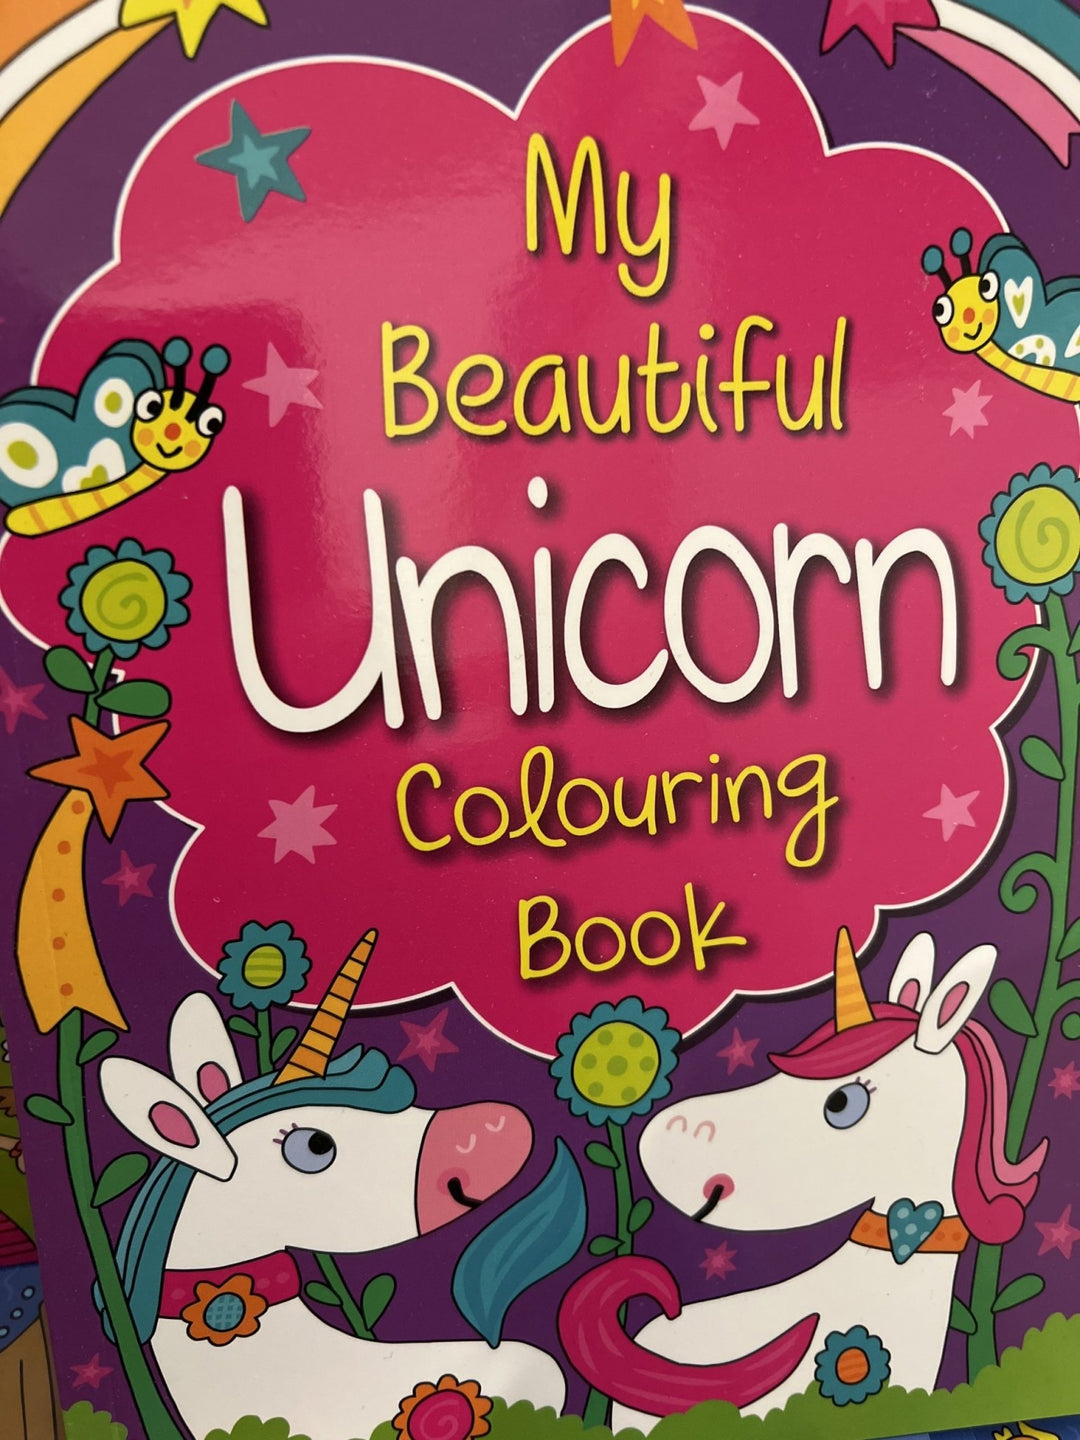 My Beautiful Unicorn Colouring Book - #HolaNanu#NDIS #creativekids